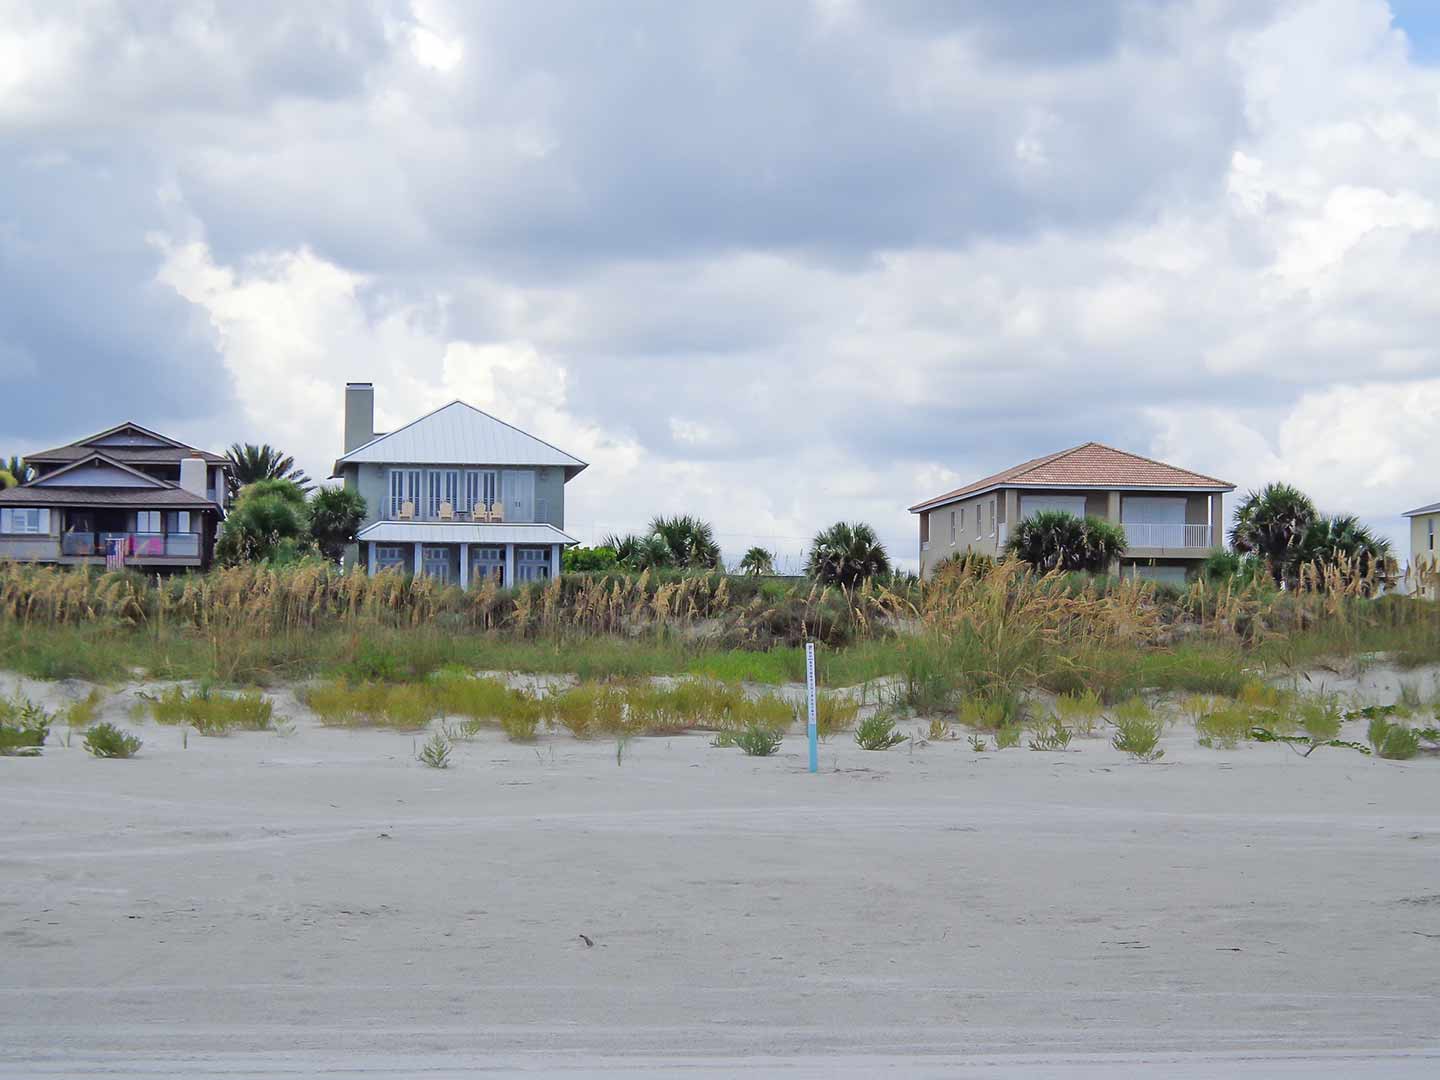 Houses on the beach.